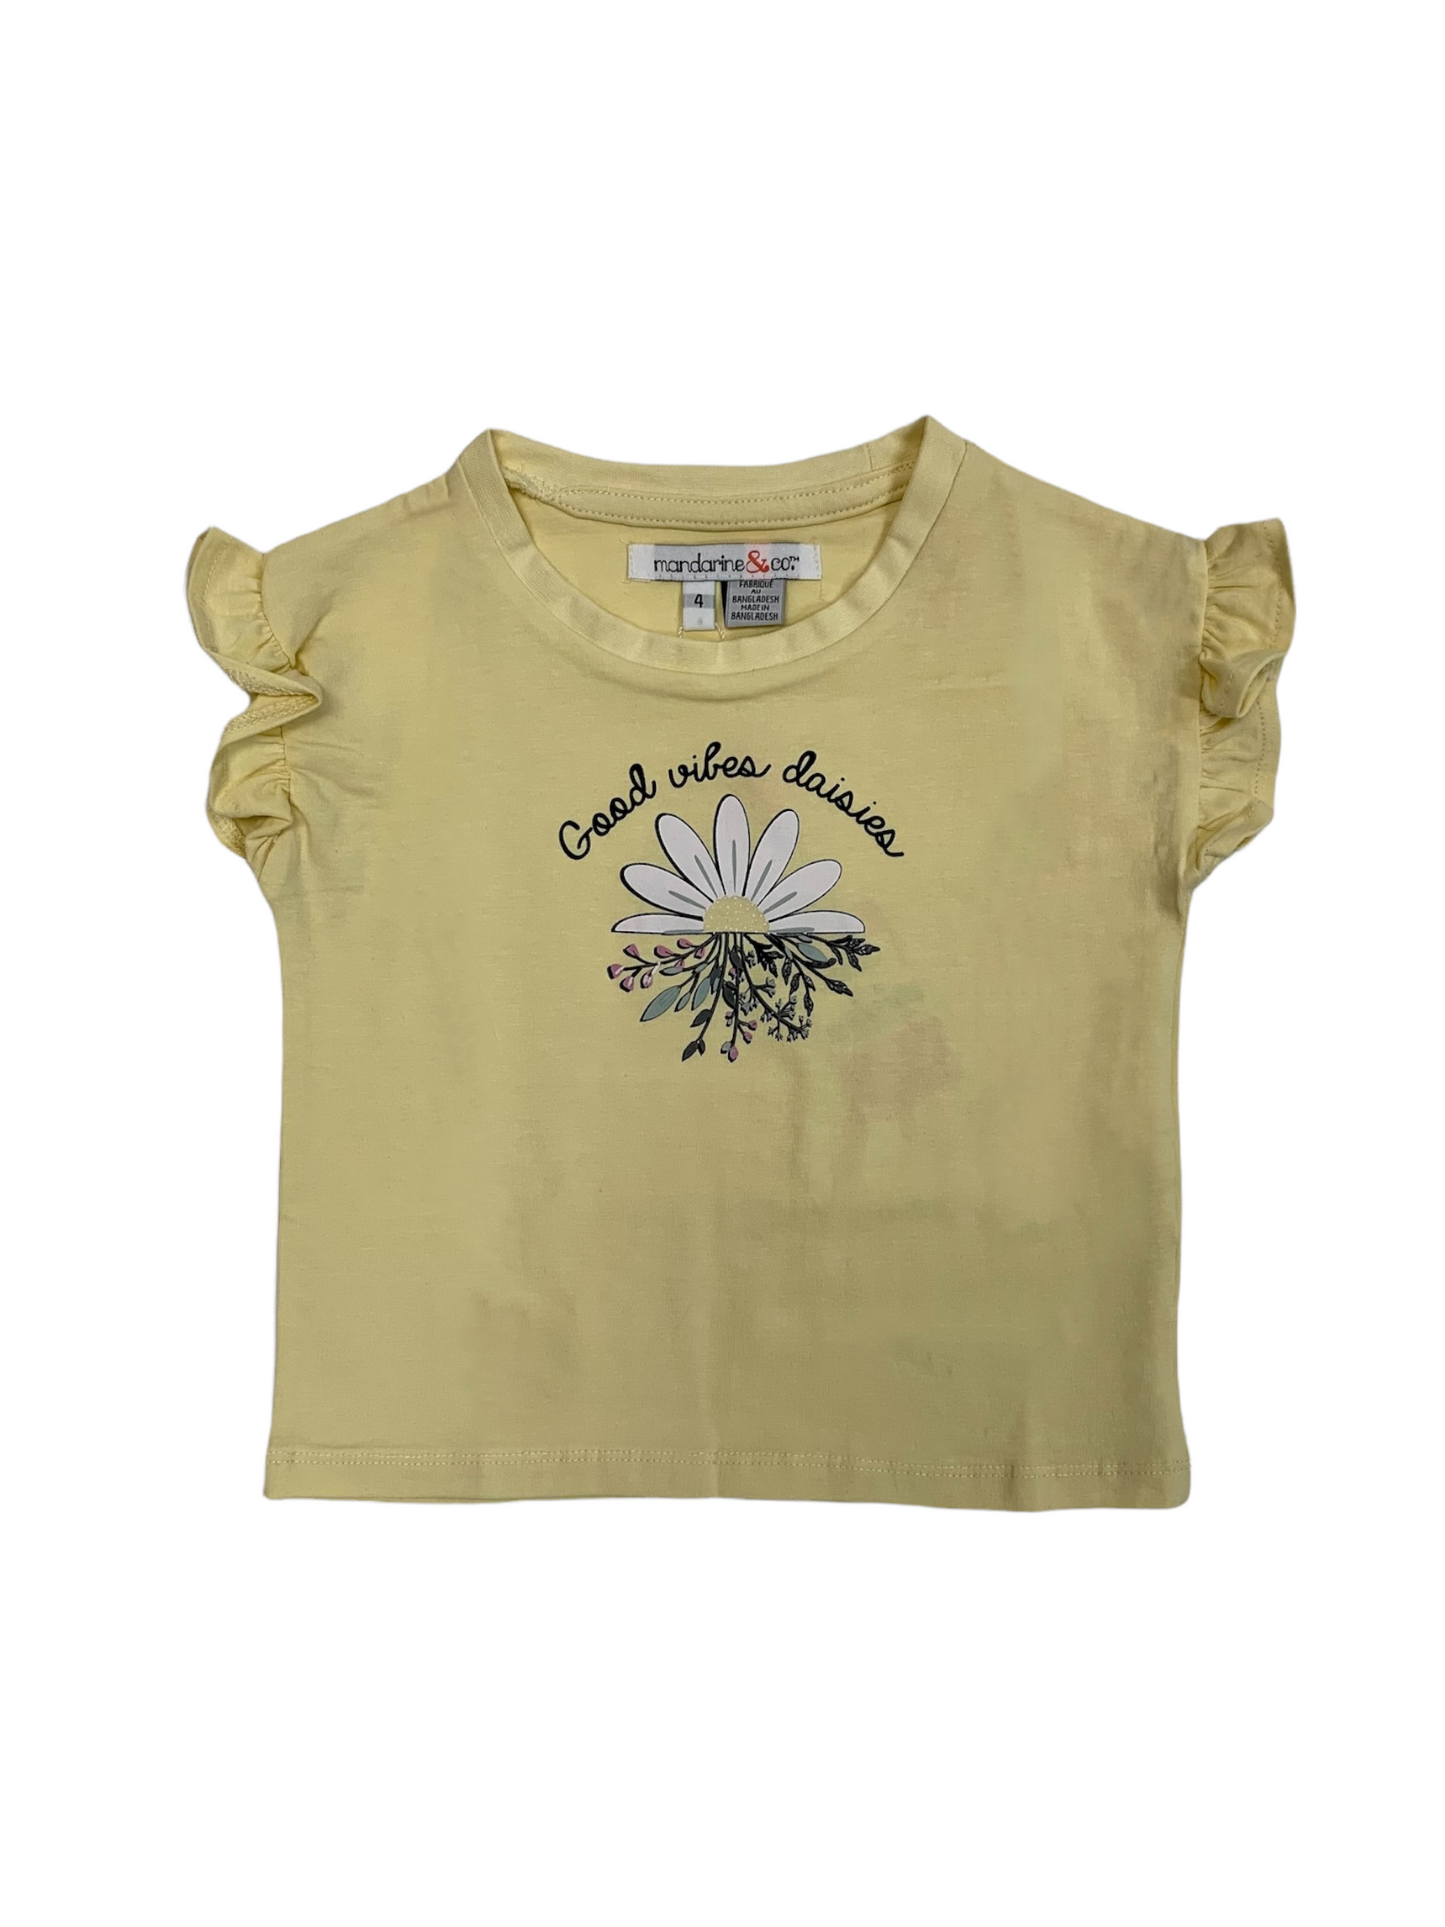 Mandarine&Co yellow T-shirt for girls 2 to 7 years